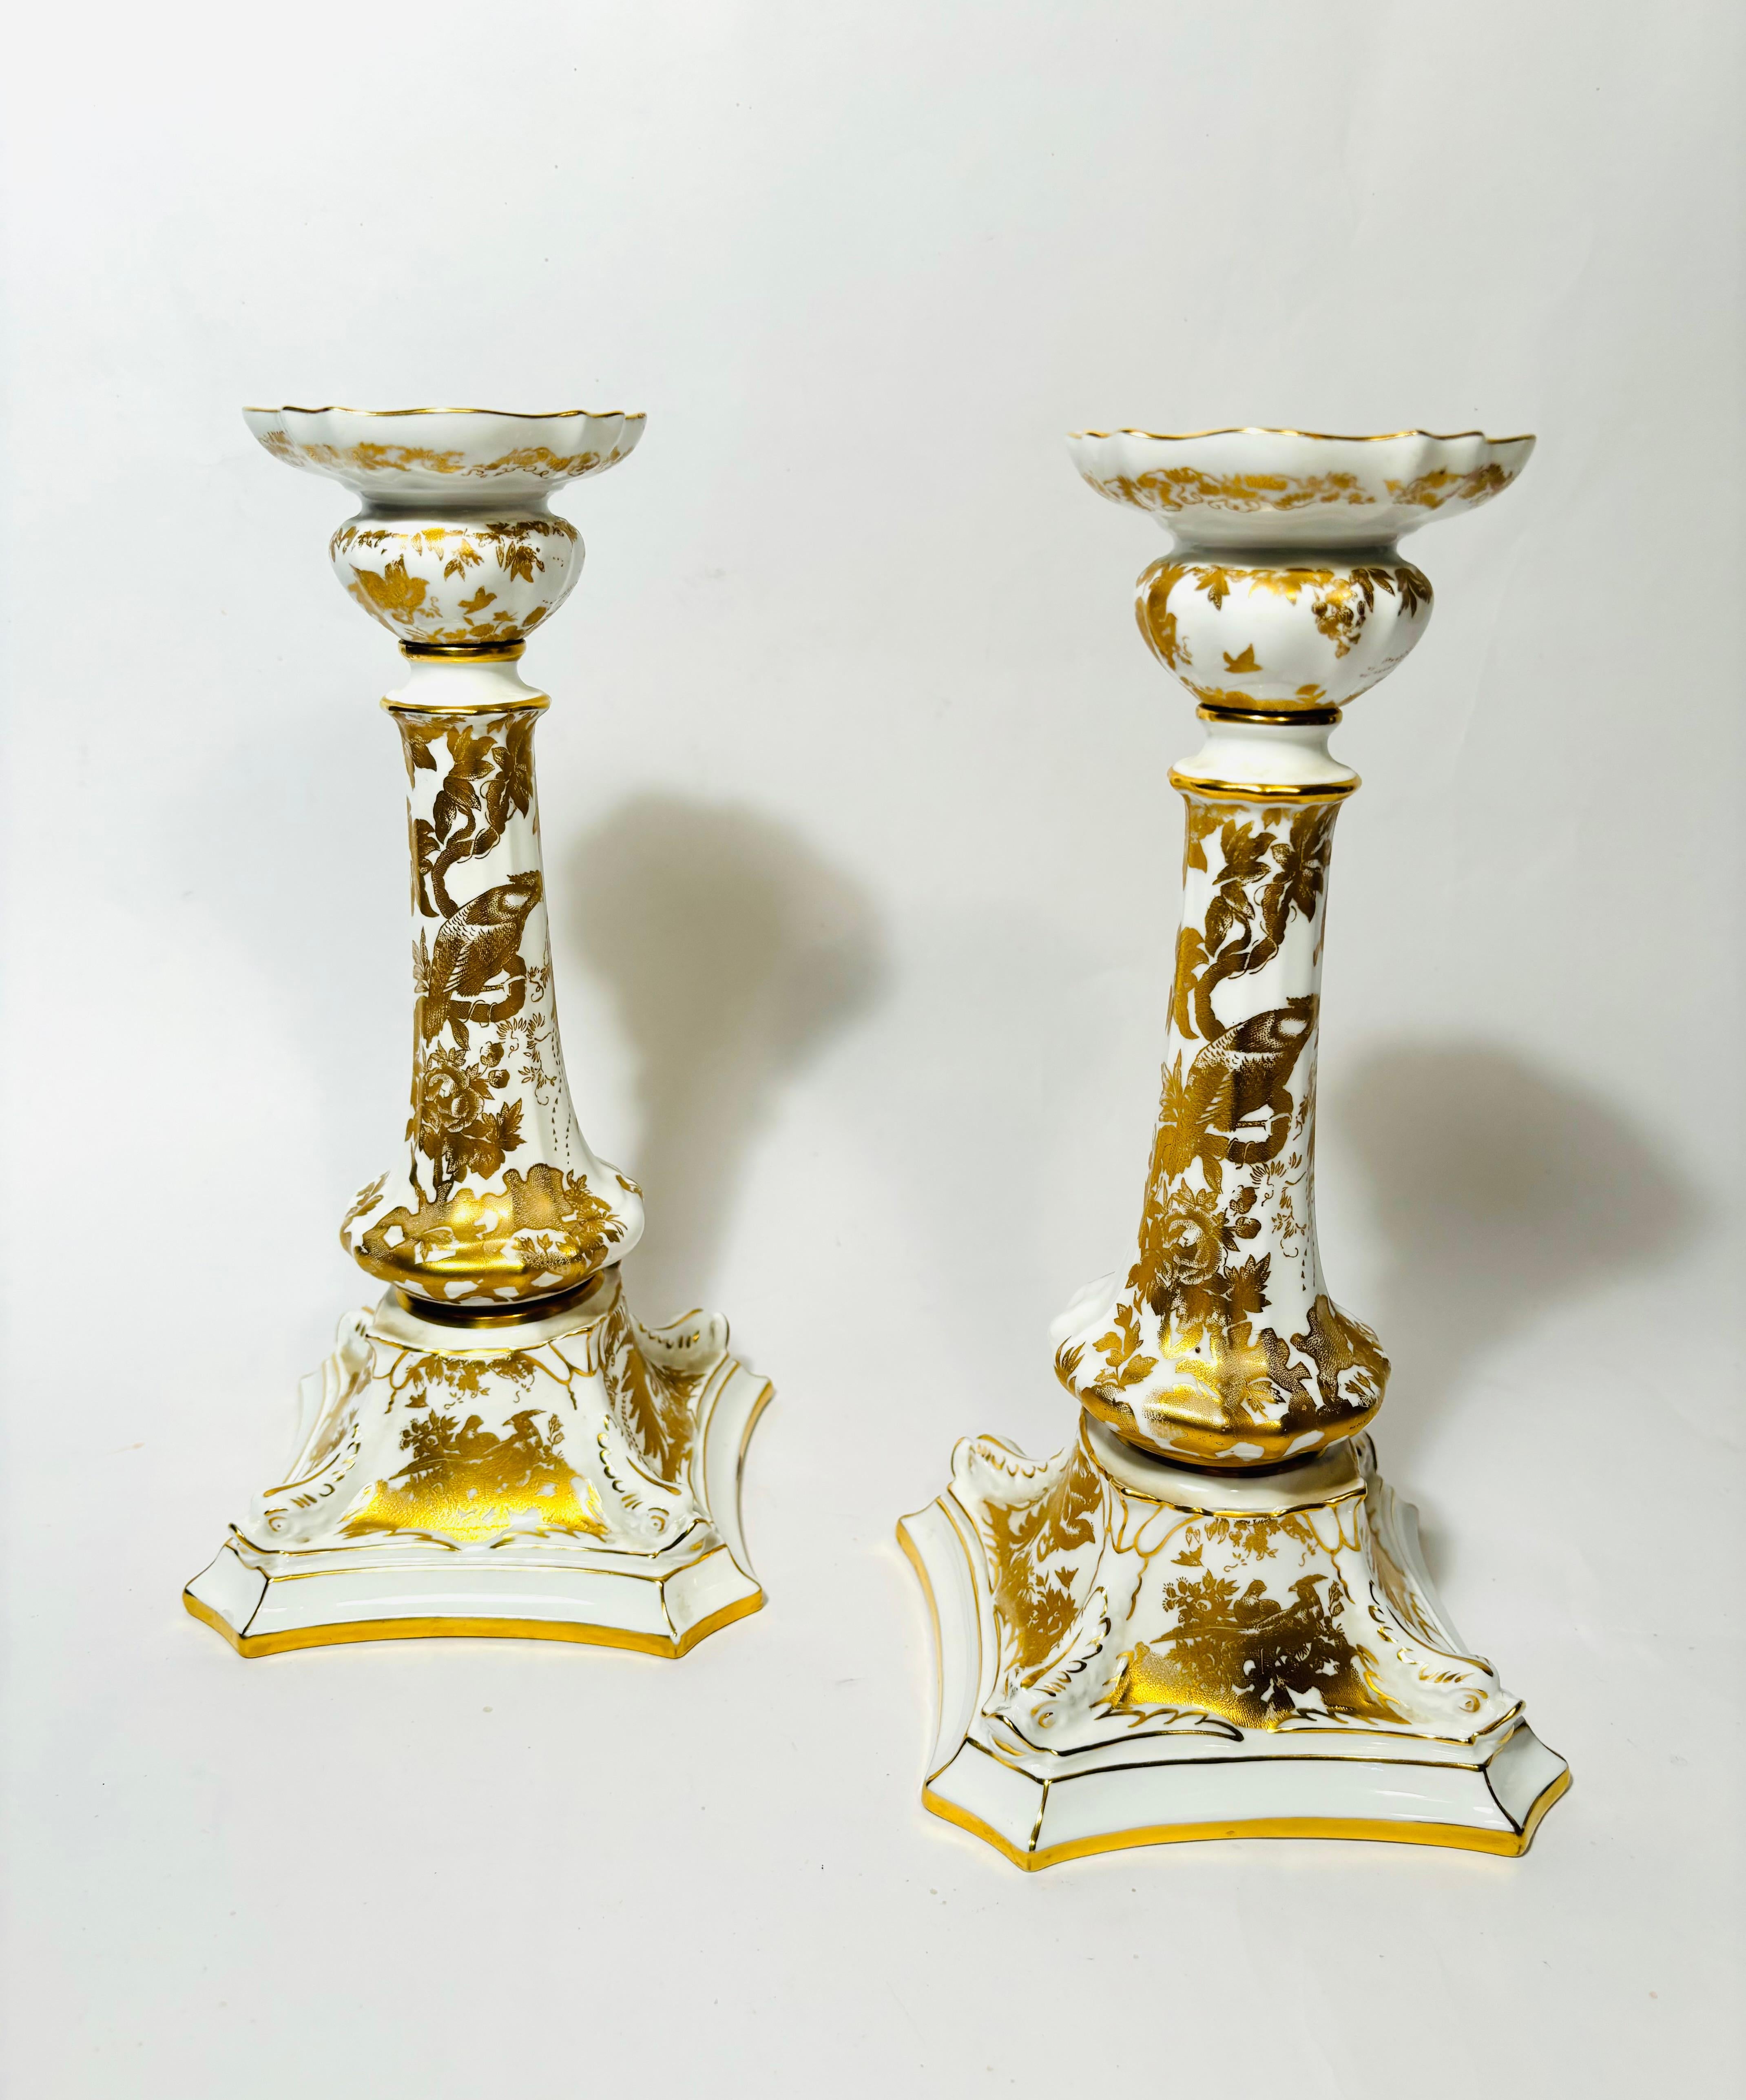 Ein elegantes Paar Kerzenhalter aus 24 Karat Gold und weißem Feinporzellan von der bekannten englischen Firma Royal Crown Derby. Dieses kunstvolle Muster aus verzierten Vögeln und Pfauen ist auf allen Stücken angebracht. Das Aves-Muster wurde von